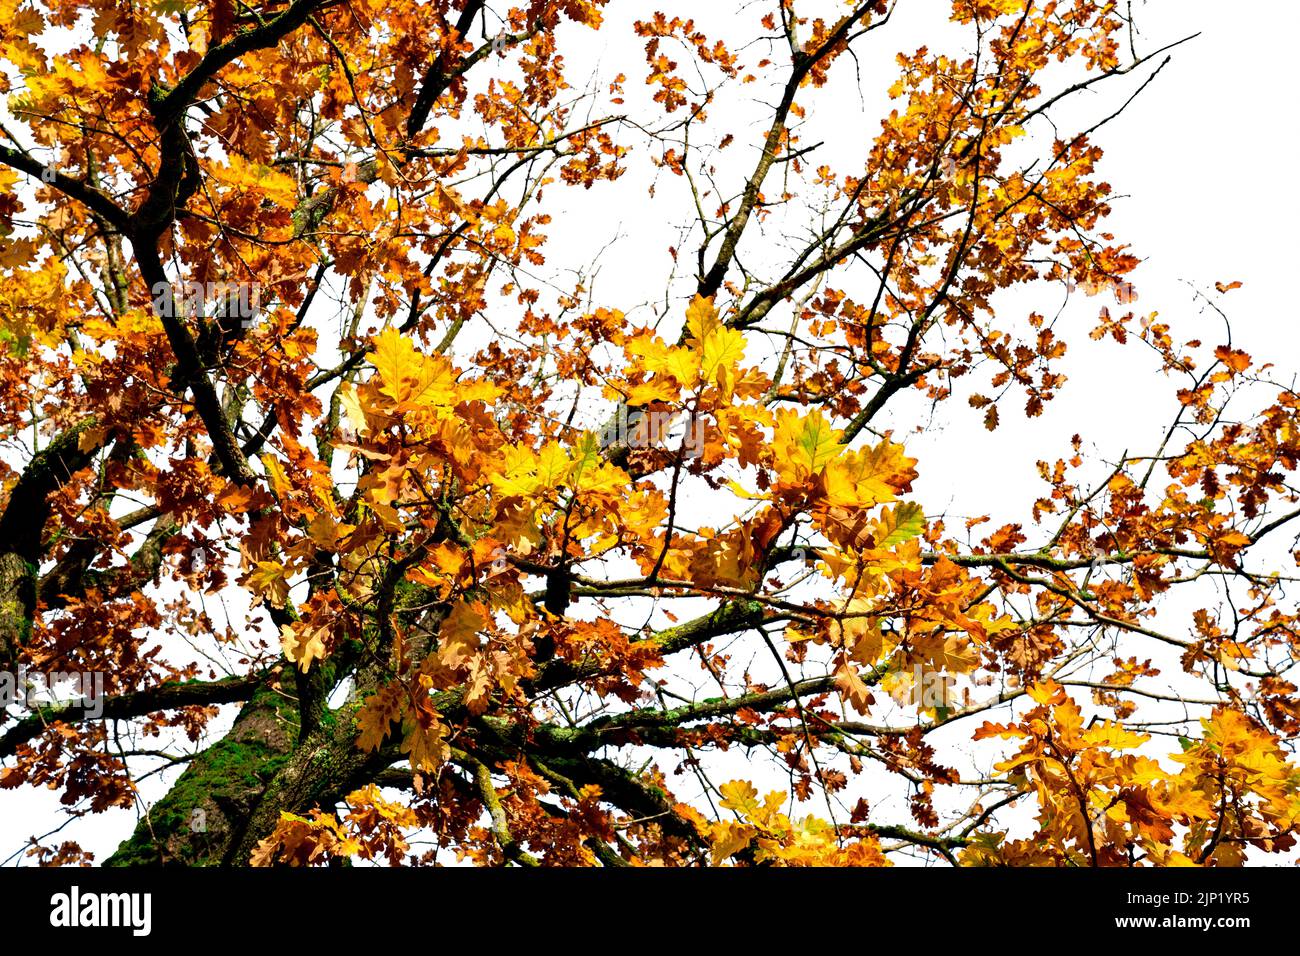 Vista en ángulo bajo del árbol de otoño con ramas y hojas amarillas y anaranjadas. Hermosas hojas de otoño. Temporada de otoño, octubre de fondo. Follaje naranja en fa Foto de stock